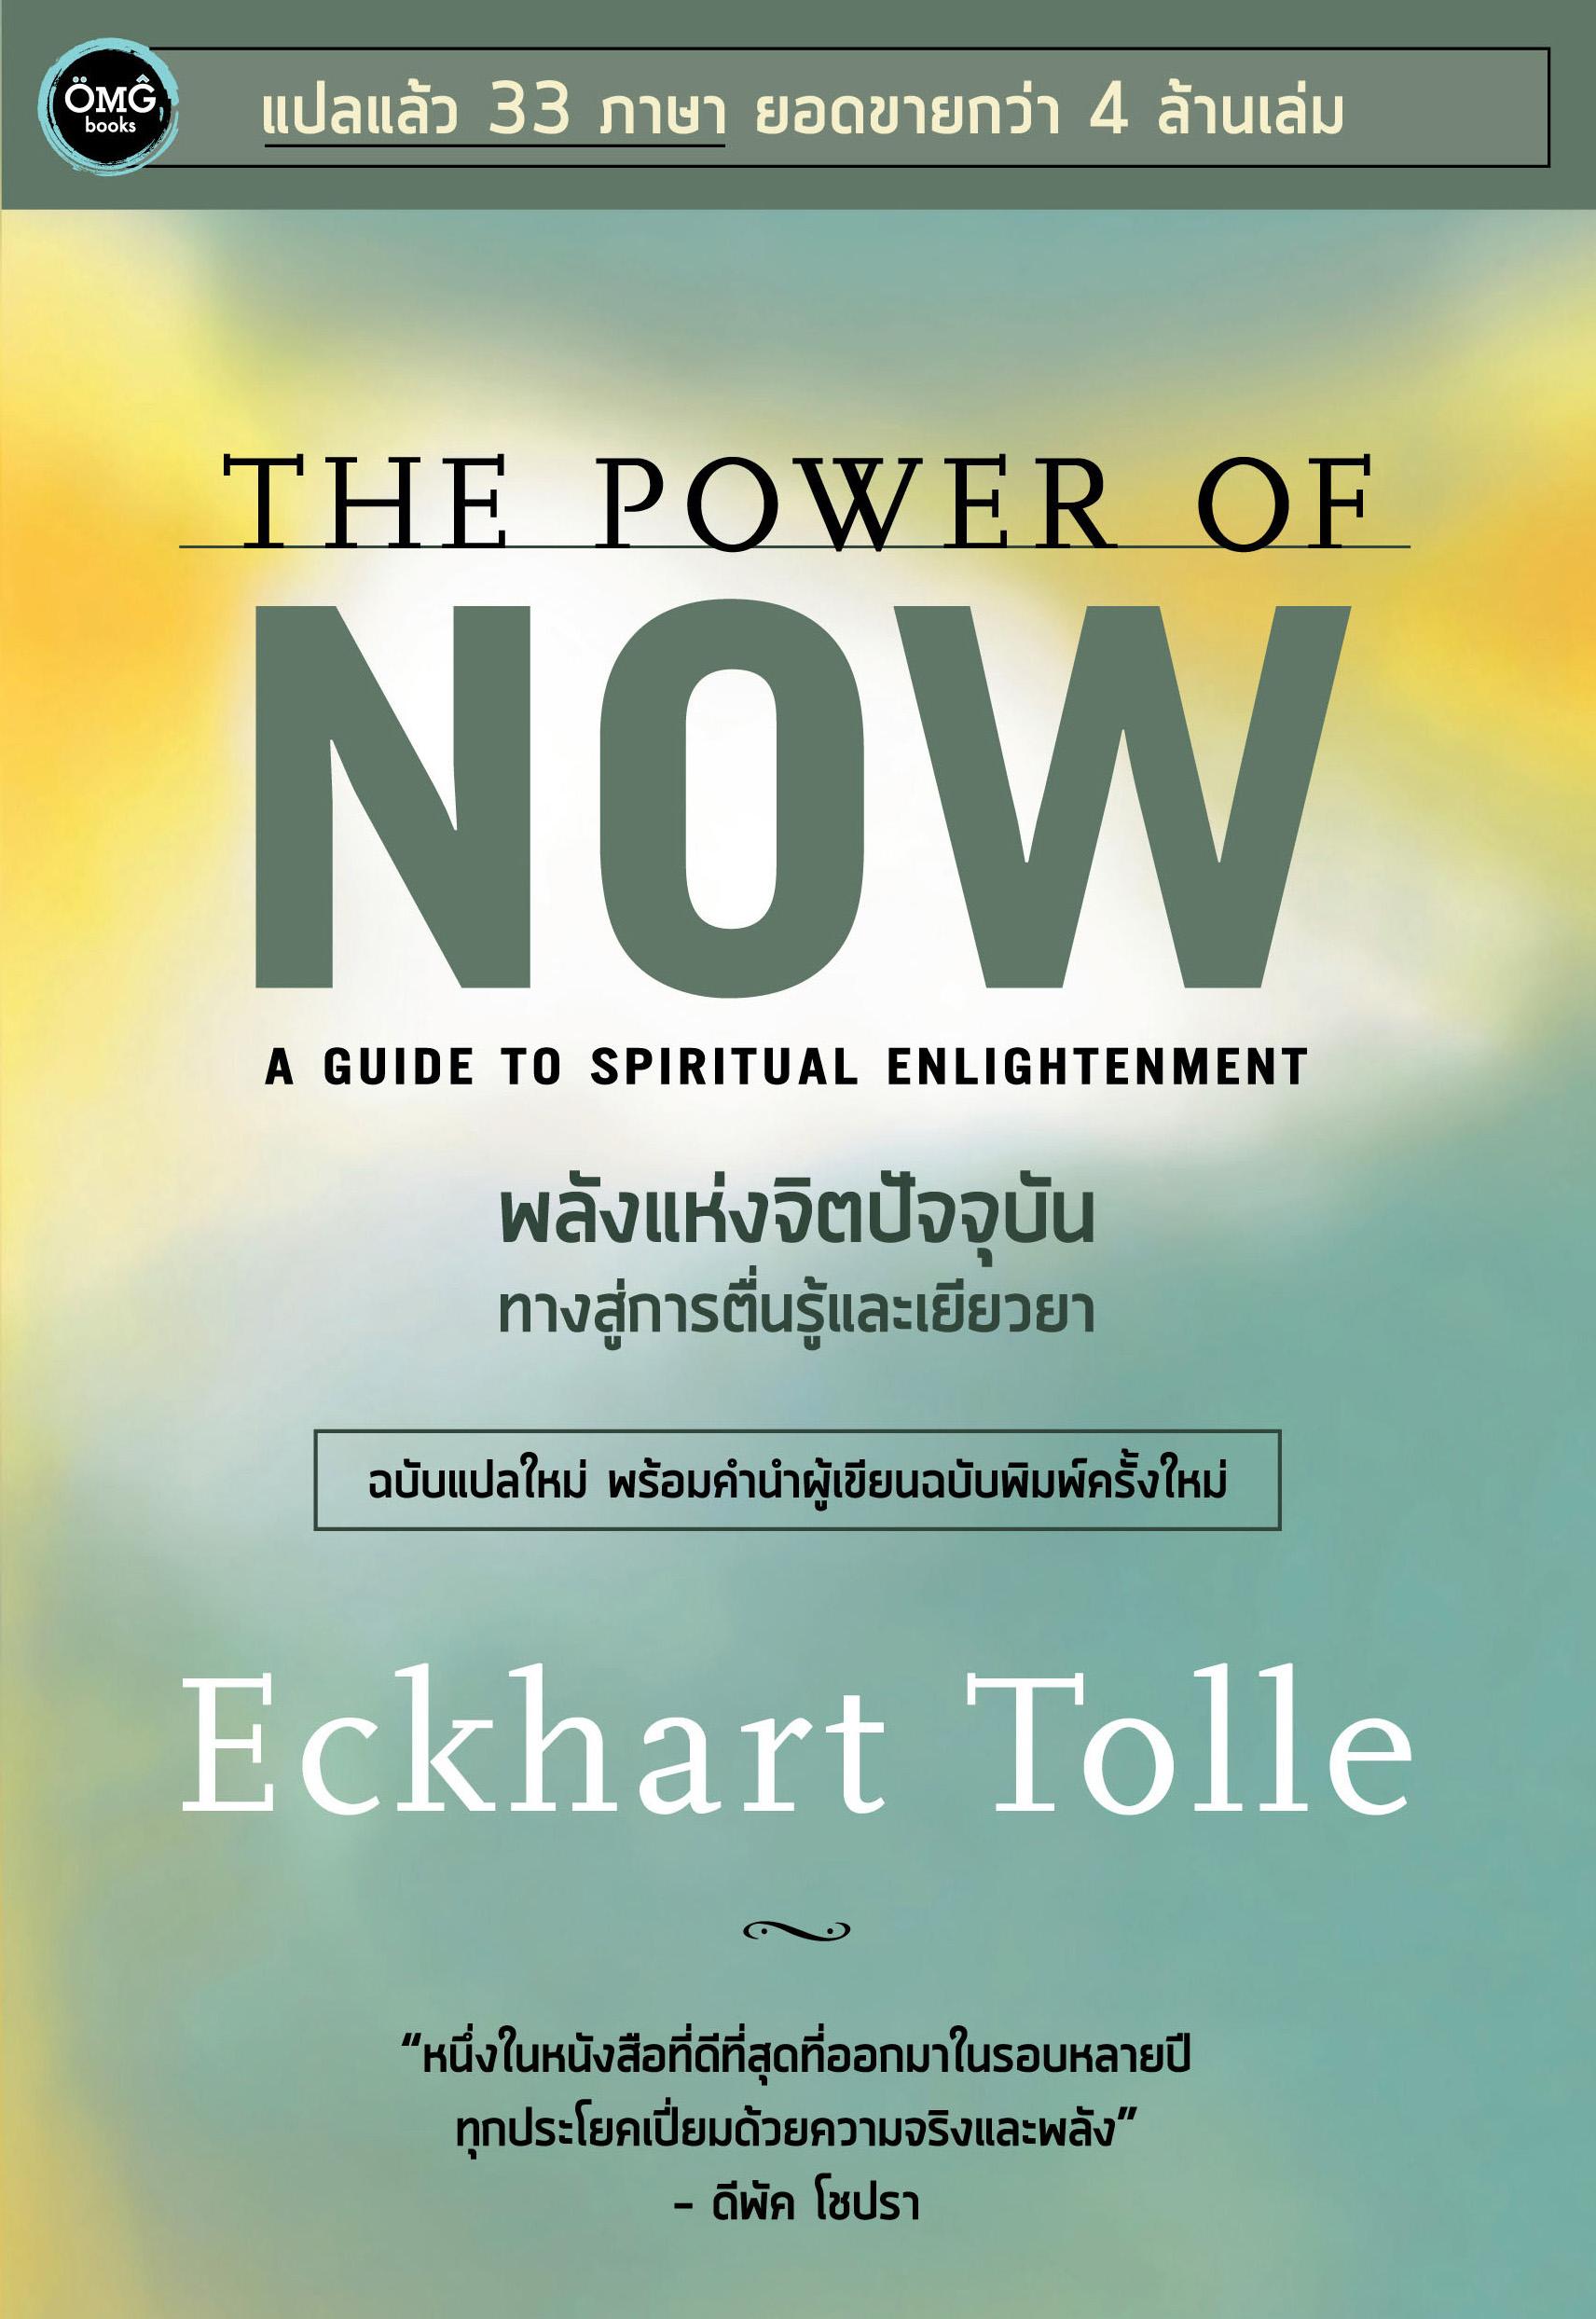 พลังแห่งจิตปัจจุบัน : ทางสู่การตื่นรู้และเยียวยา (The Power of Now : A Guide to Spiritual Enlightenment)